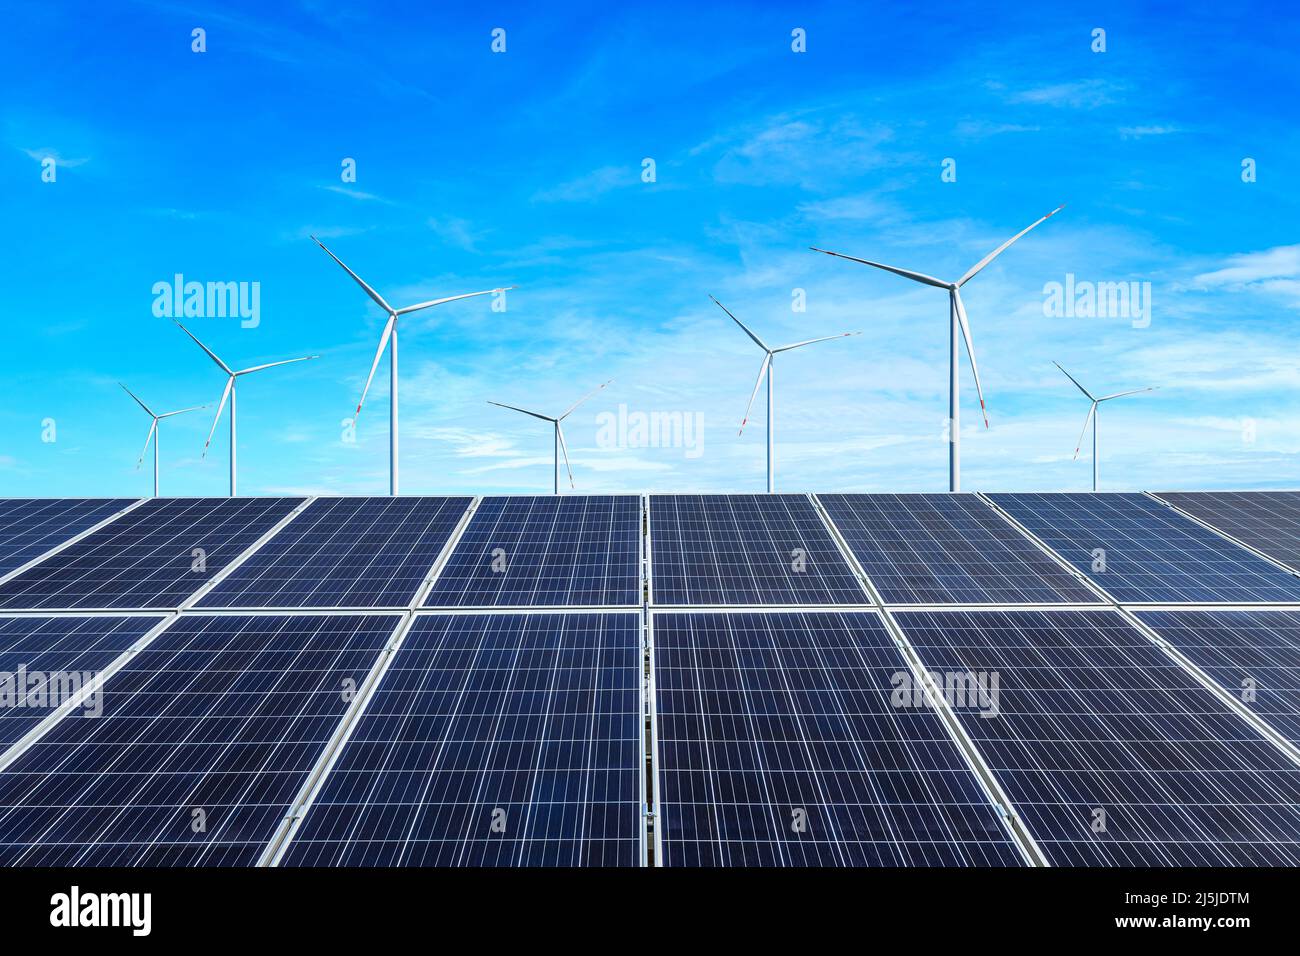 Sonnenkollektoren und Windkraftanlagen Landschaft unter blauem Himmel. Konzept für grüne Energie. Stockfoto